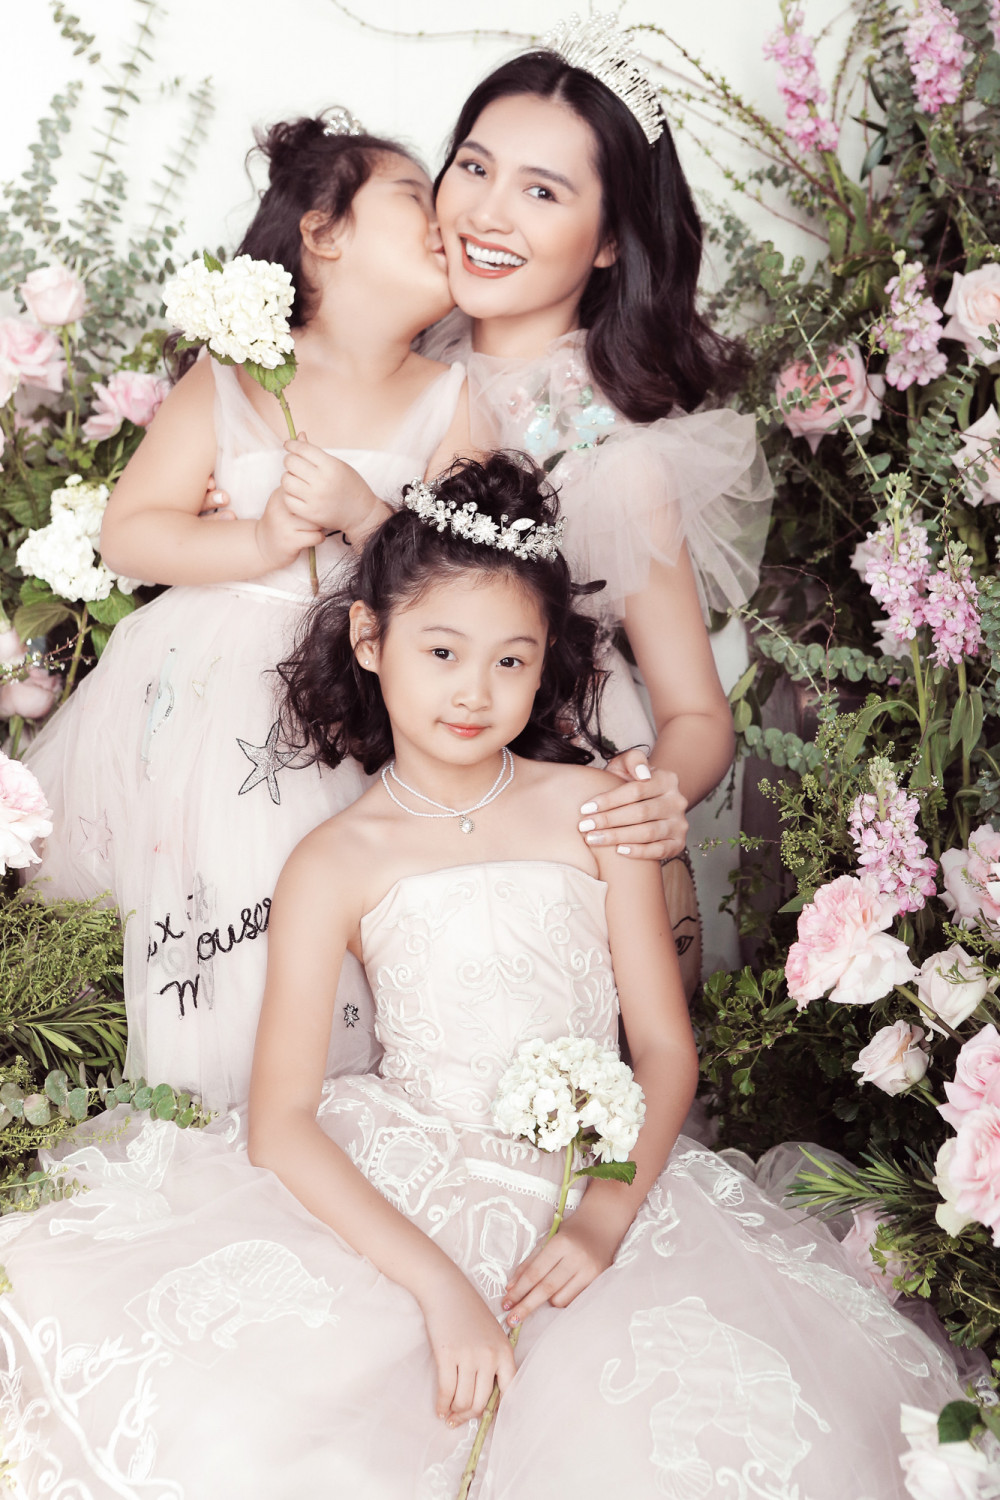 Khoảnh khắc ba mẹ con cùng vui cười, đùa nghịch trong những chiếc váy trắng bồng xoè trang nhã toát lên sự hạnh phúc. Với Hoa hậu đẹp nhất châu Á 2009 được chứng kiến từng giây phút trưởng thành của các con là niềm vui lớn nhất của cô.